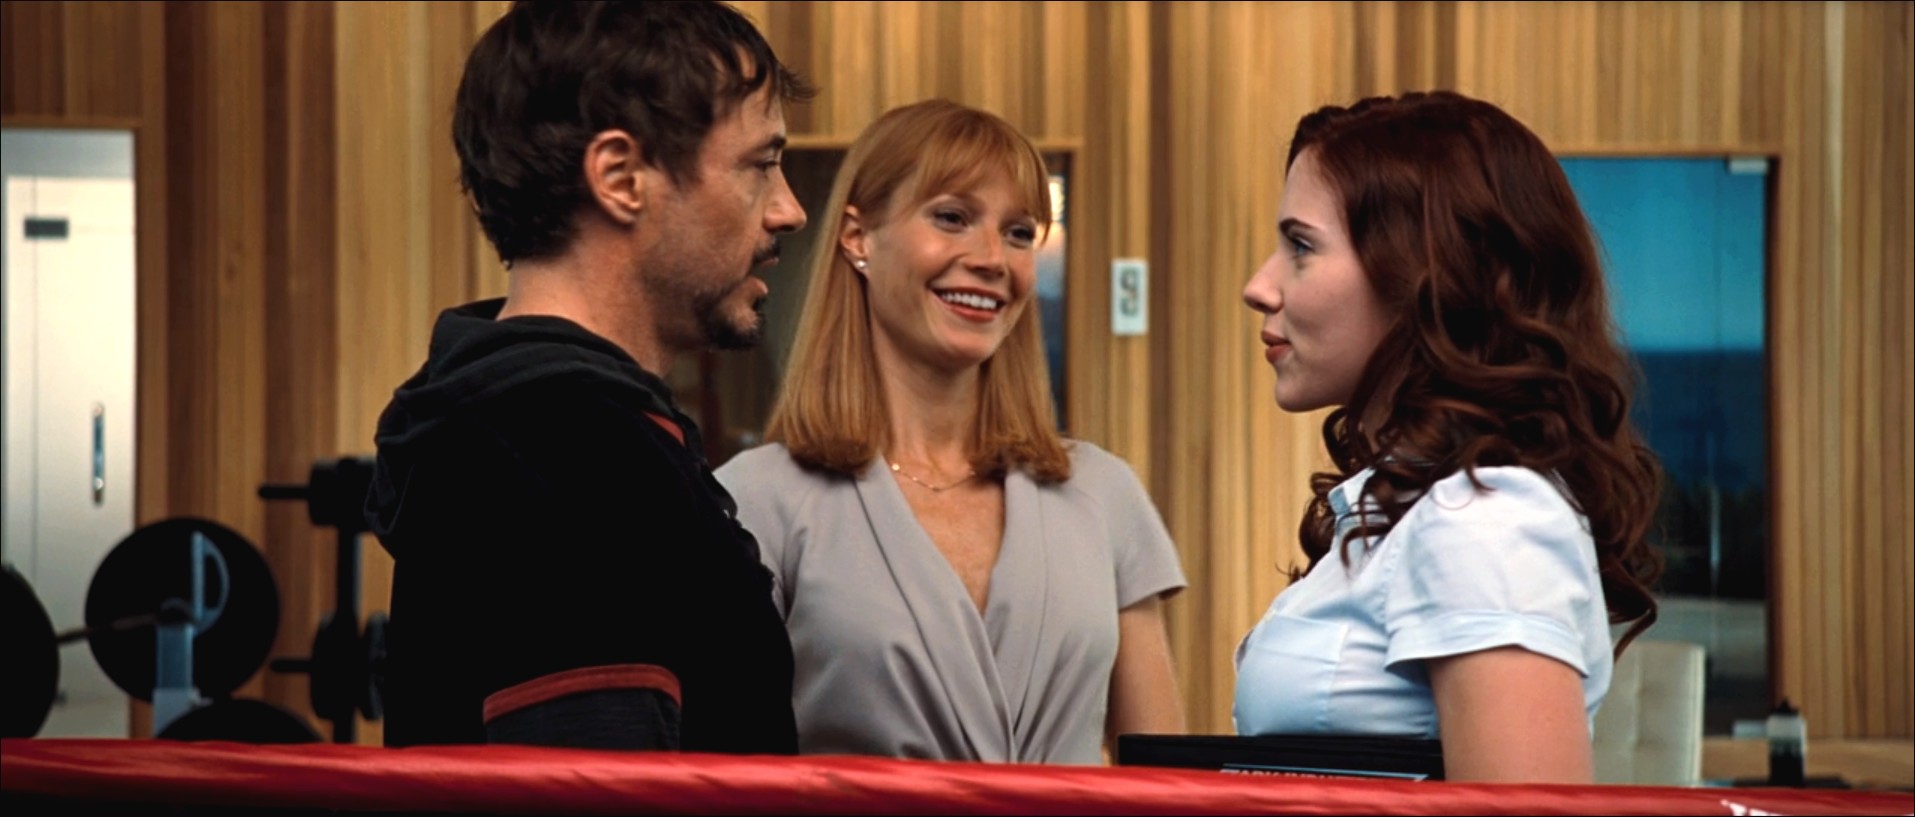 Tony Stark, Pepper Potts et Natalie Rushman, film MARVEL Iron Man 2